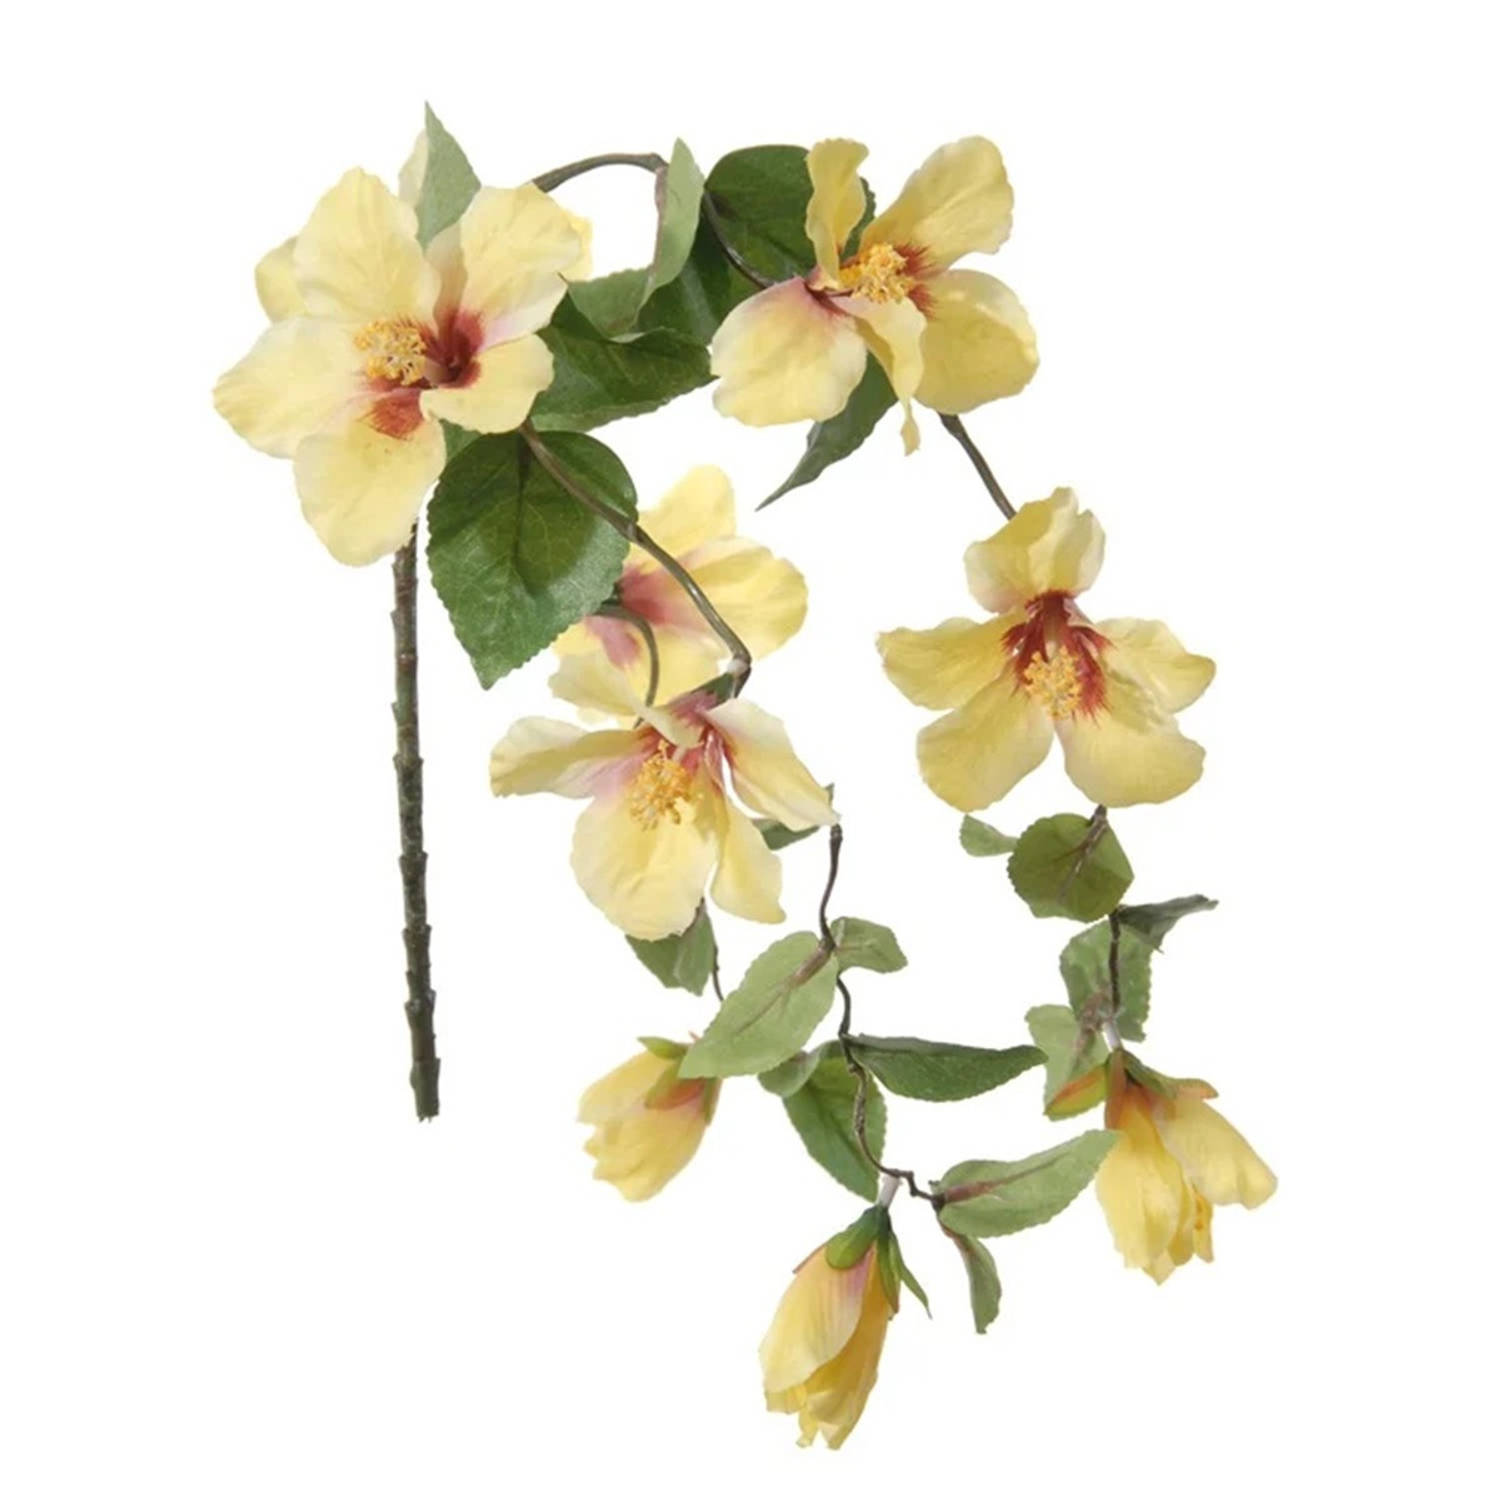 Louis Maes kunstbloemen - Hibiscus - geel - hangende tak van 165 cm - Hawaii/zomer thema versiering